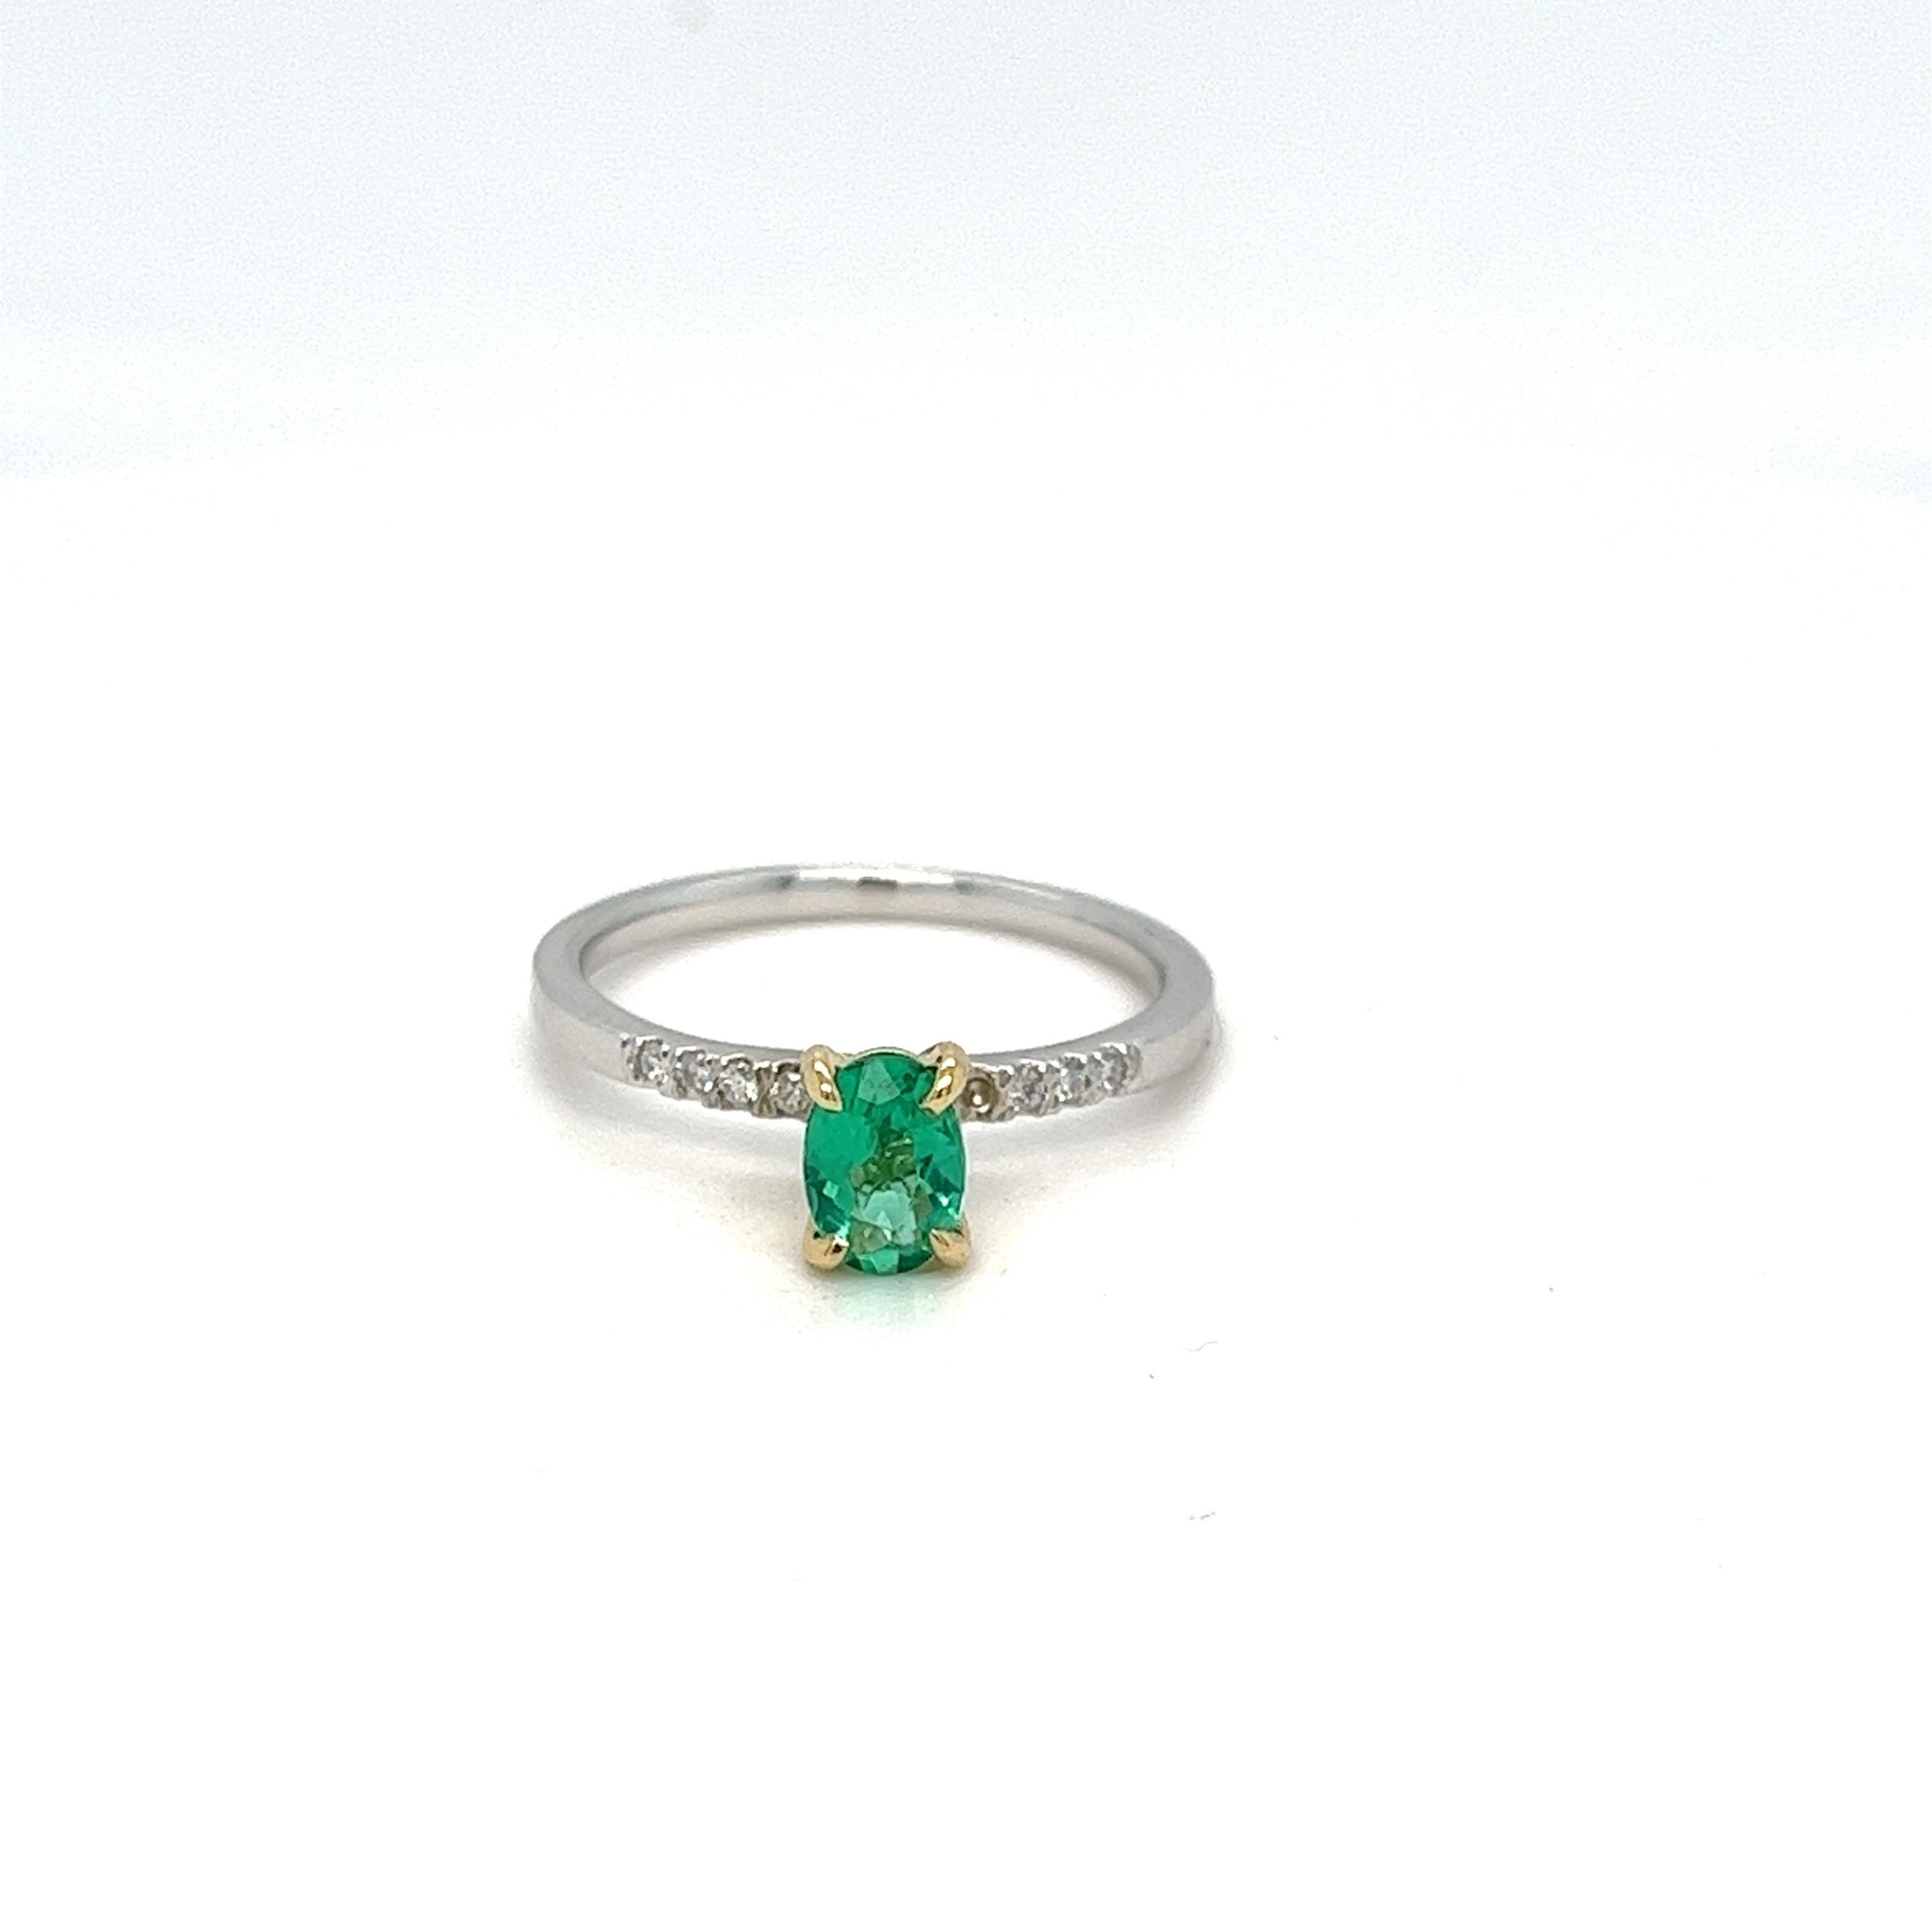 Lassen Sie sich von der faszinierenden Schönheit unseres exquisiten Rings mit einem 0,50-Karat-Smaragd aus Erdminen verzaubern. Dieses bezaubernde Stück zeigt einen atemberaubenden ovalen Smaragd von 0,50 Karat, der in einem satten Grünton